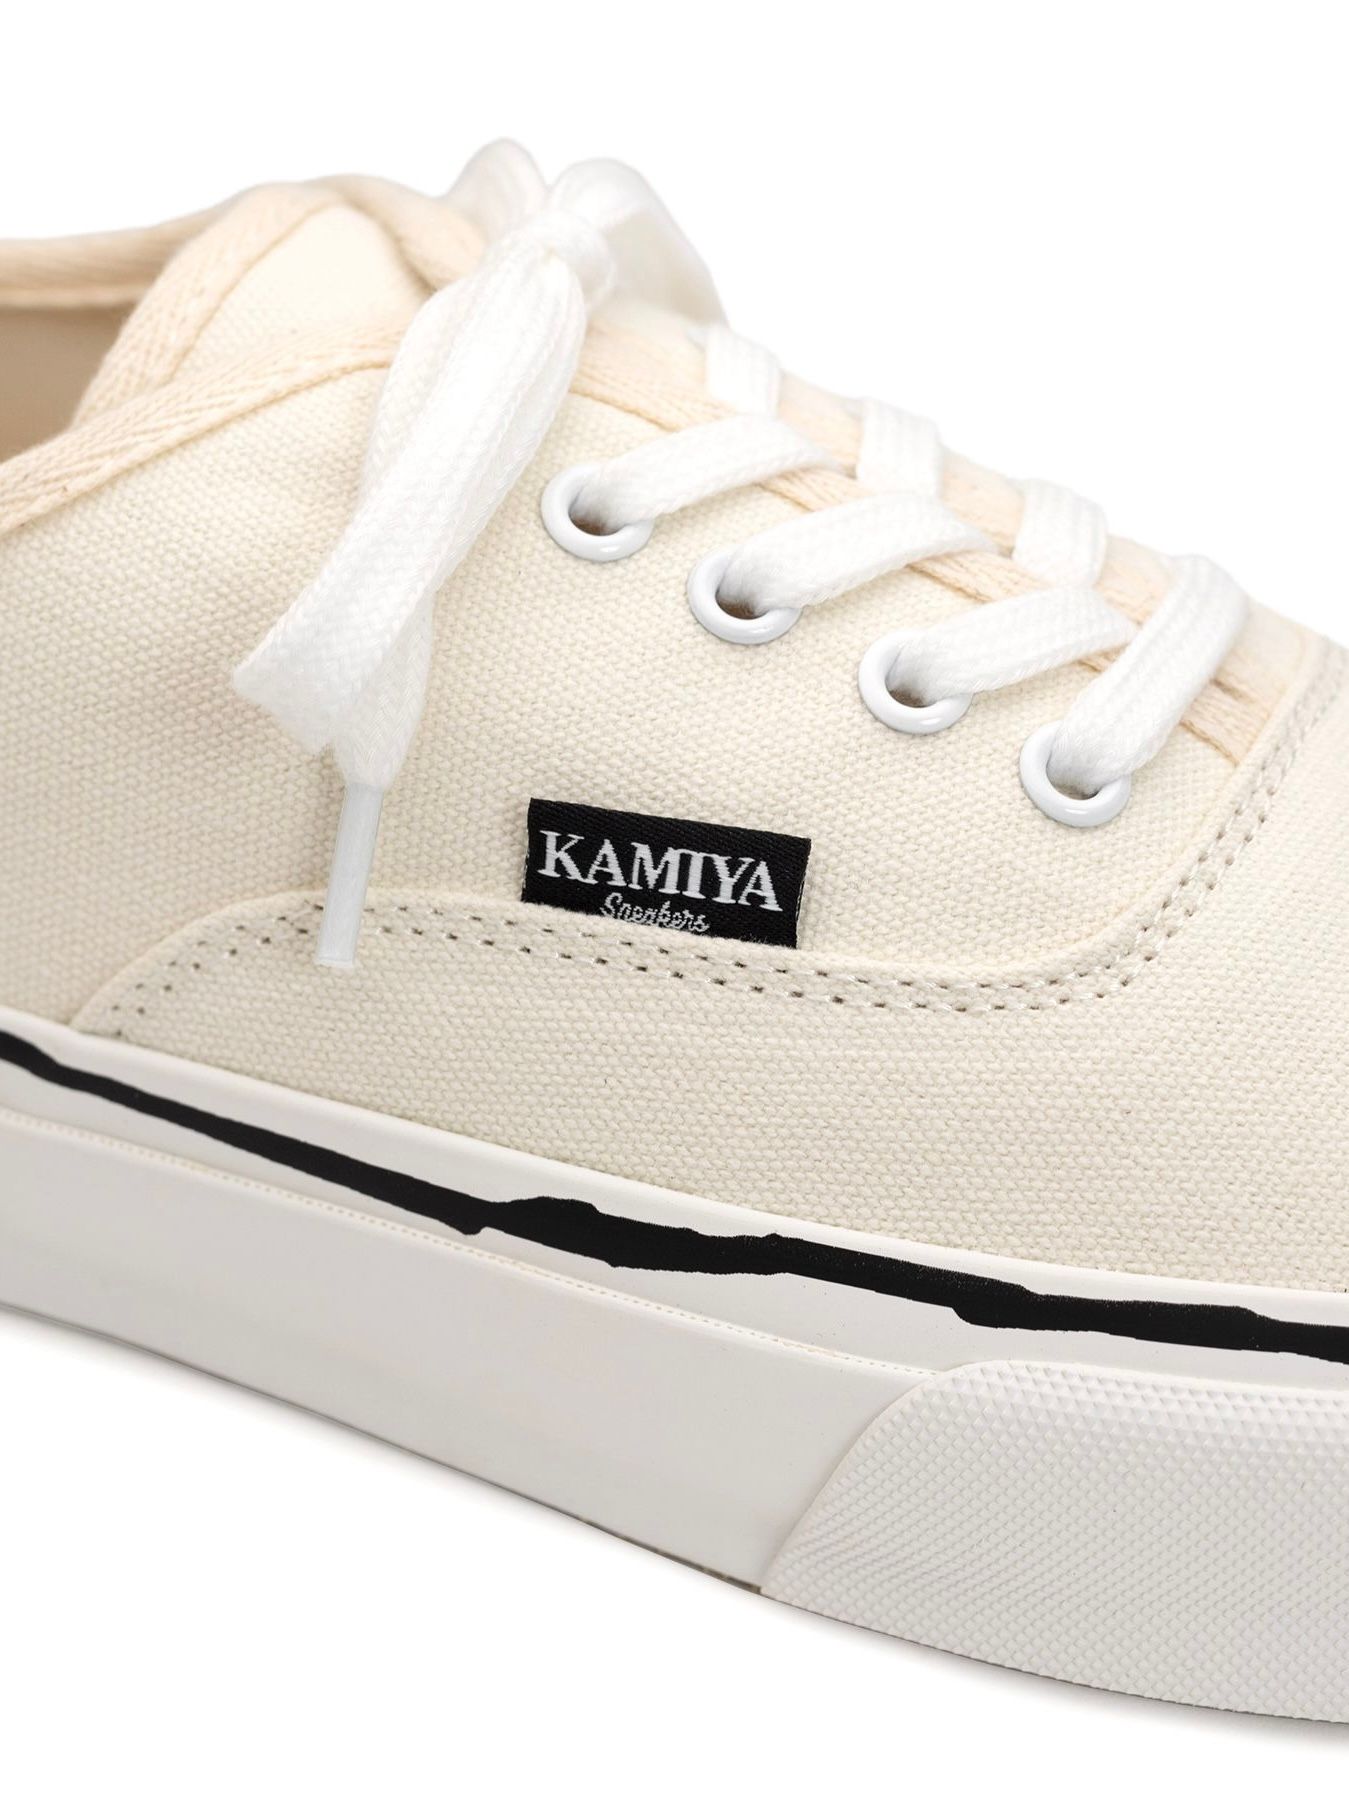 KAMIYA - 【24SS】ヴァルカナイズ スニーカー / Vulcanize Sneaker ...